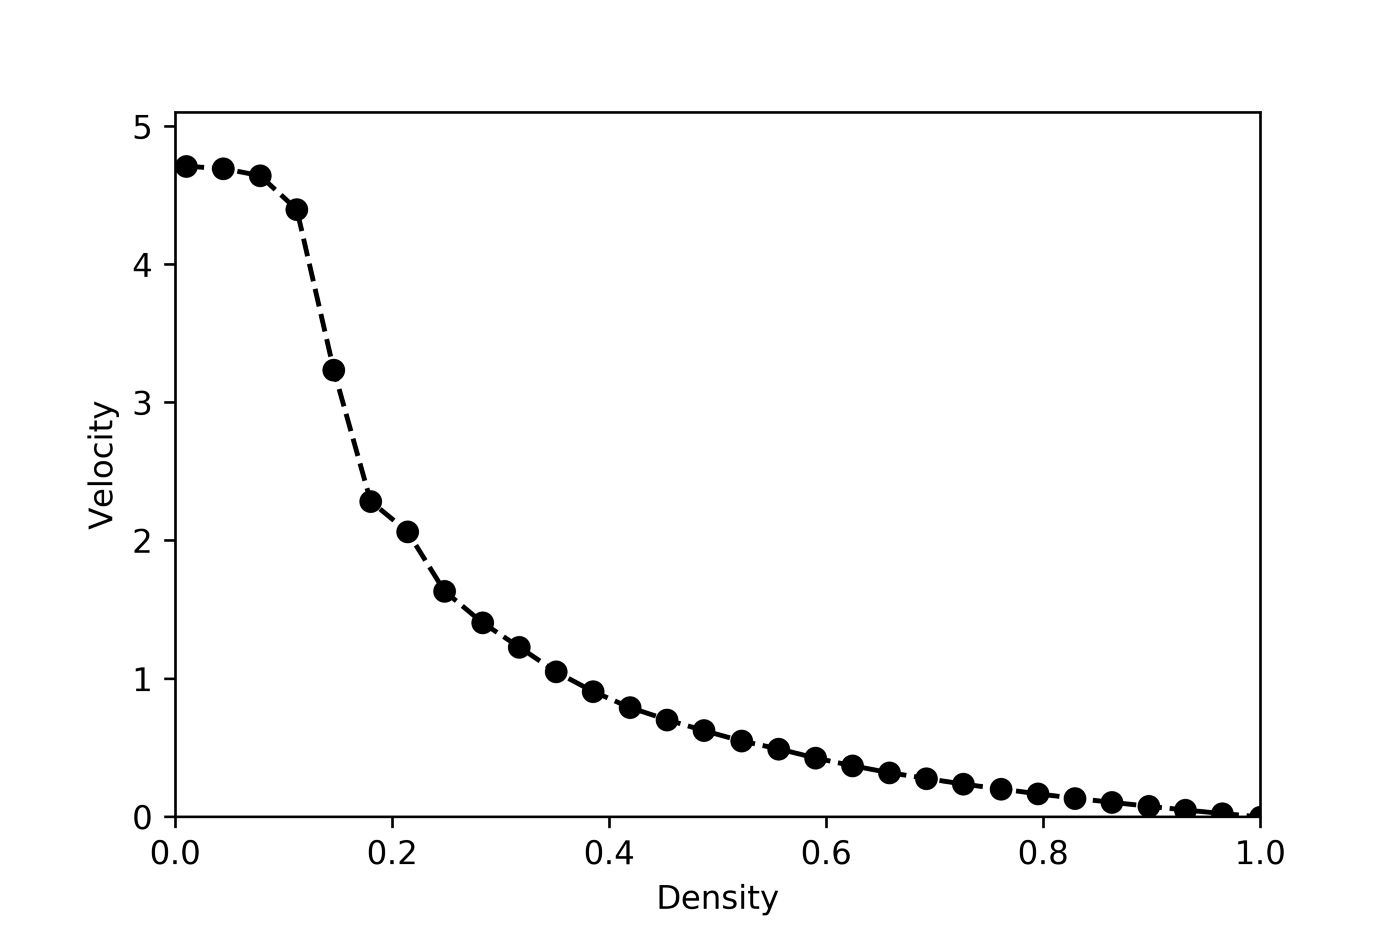 Velocity vs Density for Nagel-Schrekenberg model with p=0.3 | Skanda Vivek